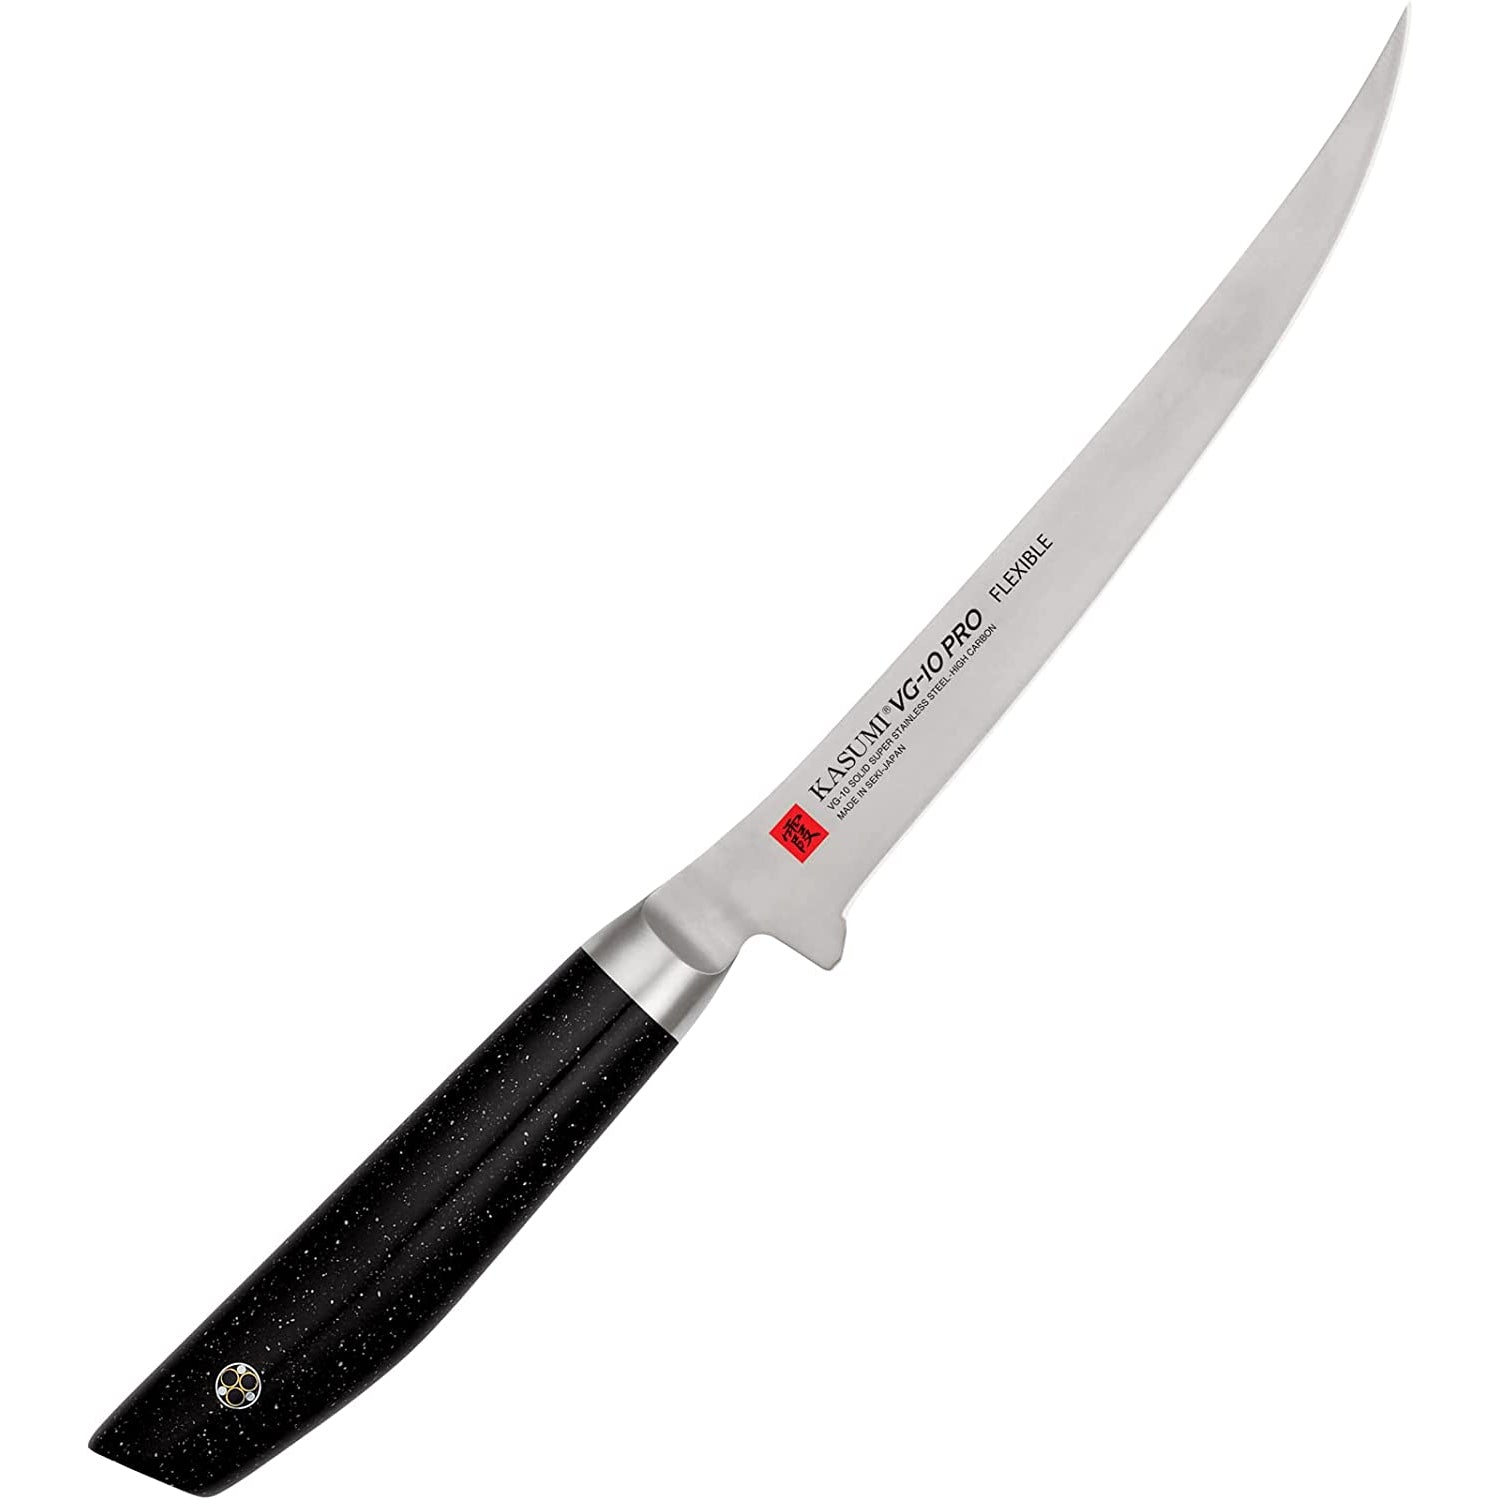 Sumikama Kasumi VG-10 Pro Japanese Fillet Knife 180mm 56018 – Japanese Taste